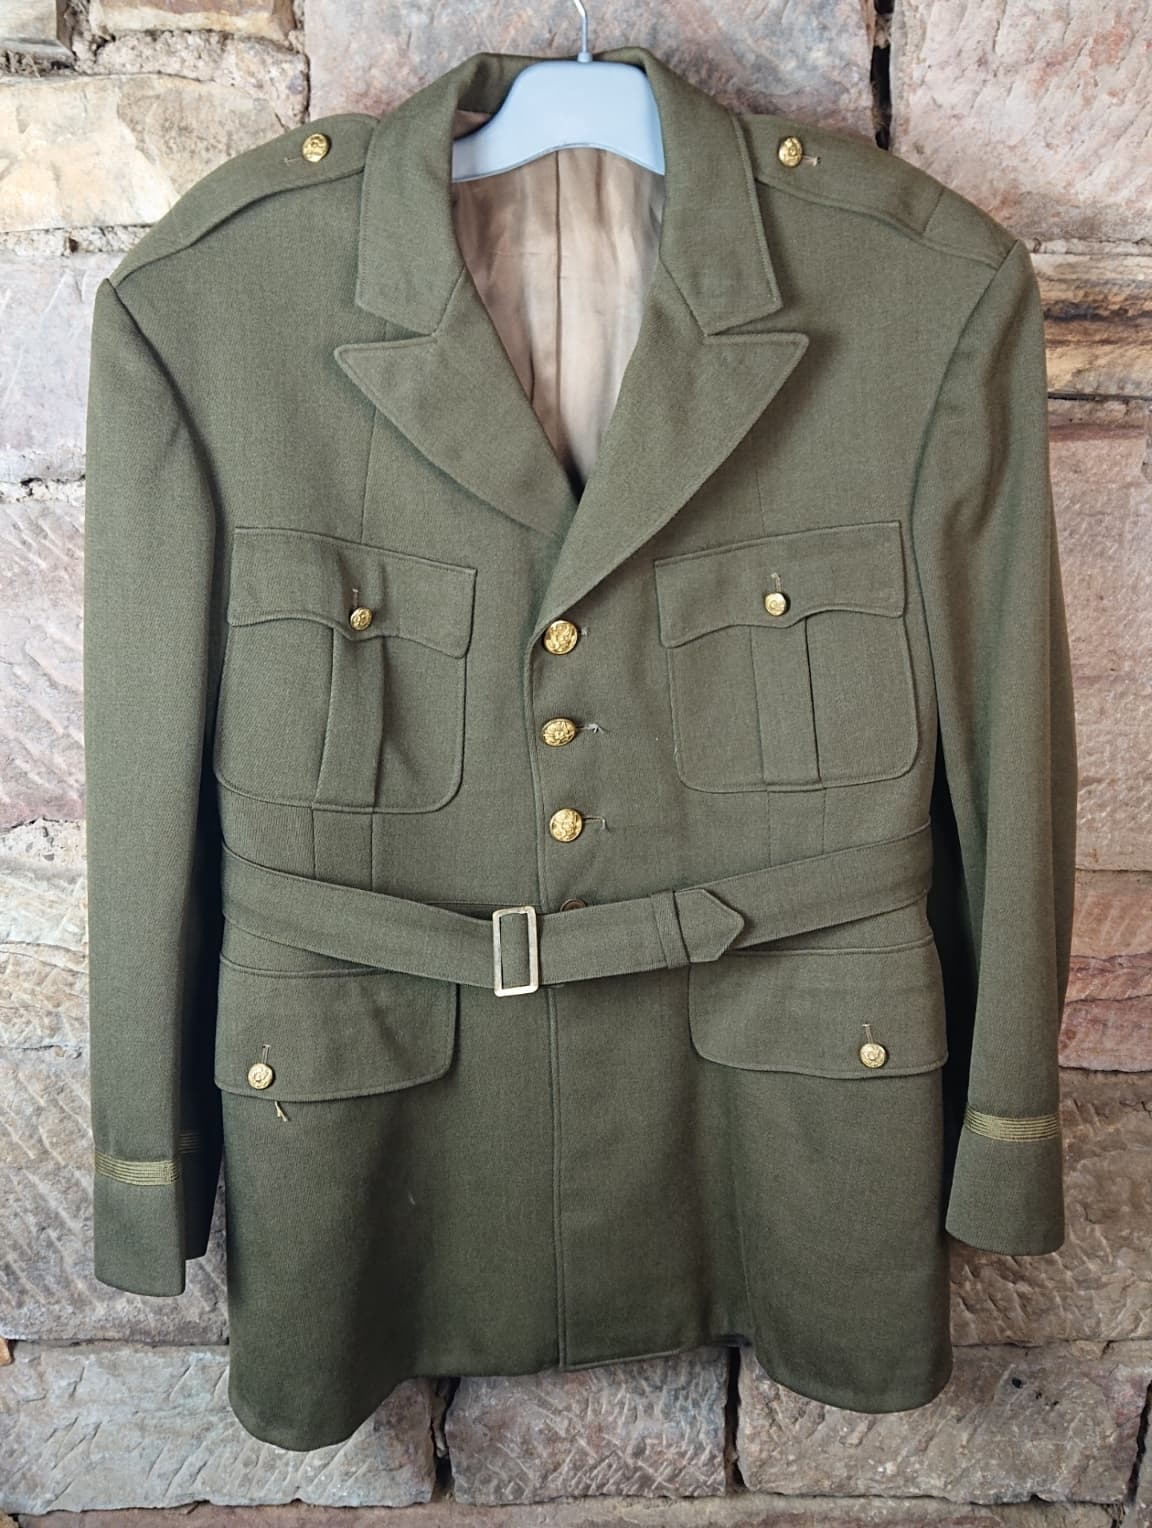 HdS Militaria Veste officier US / US officer's jacket